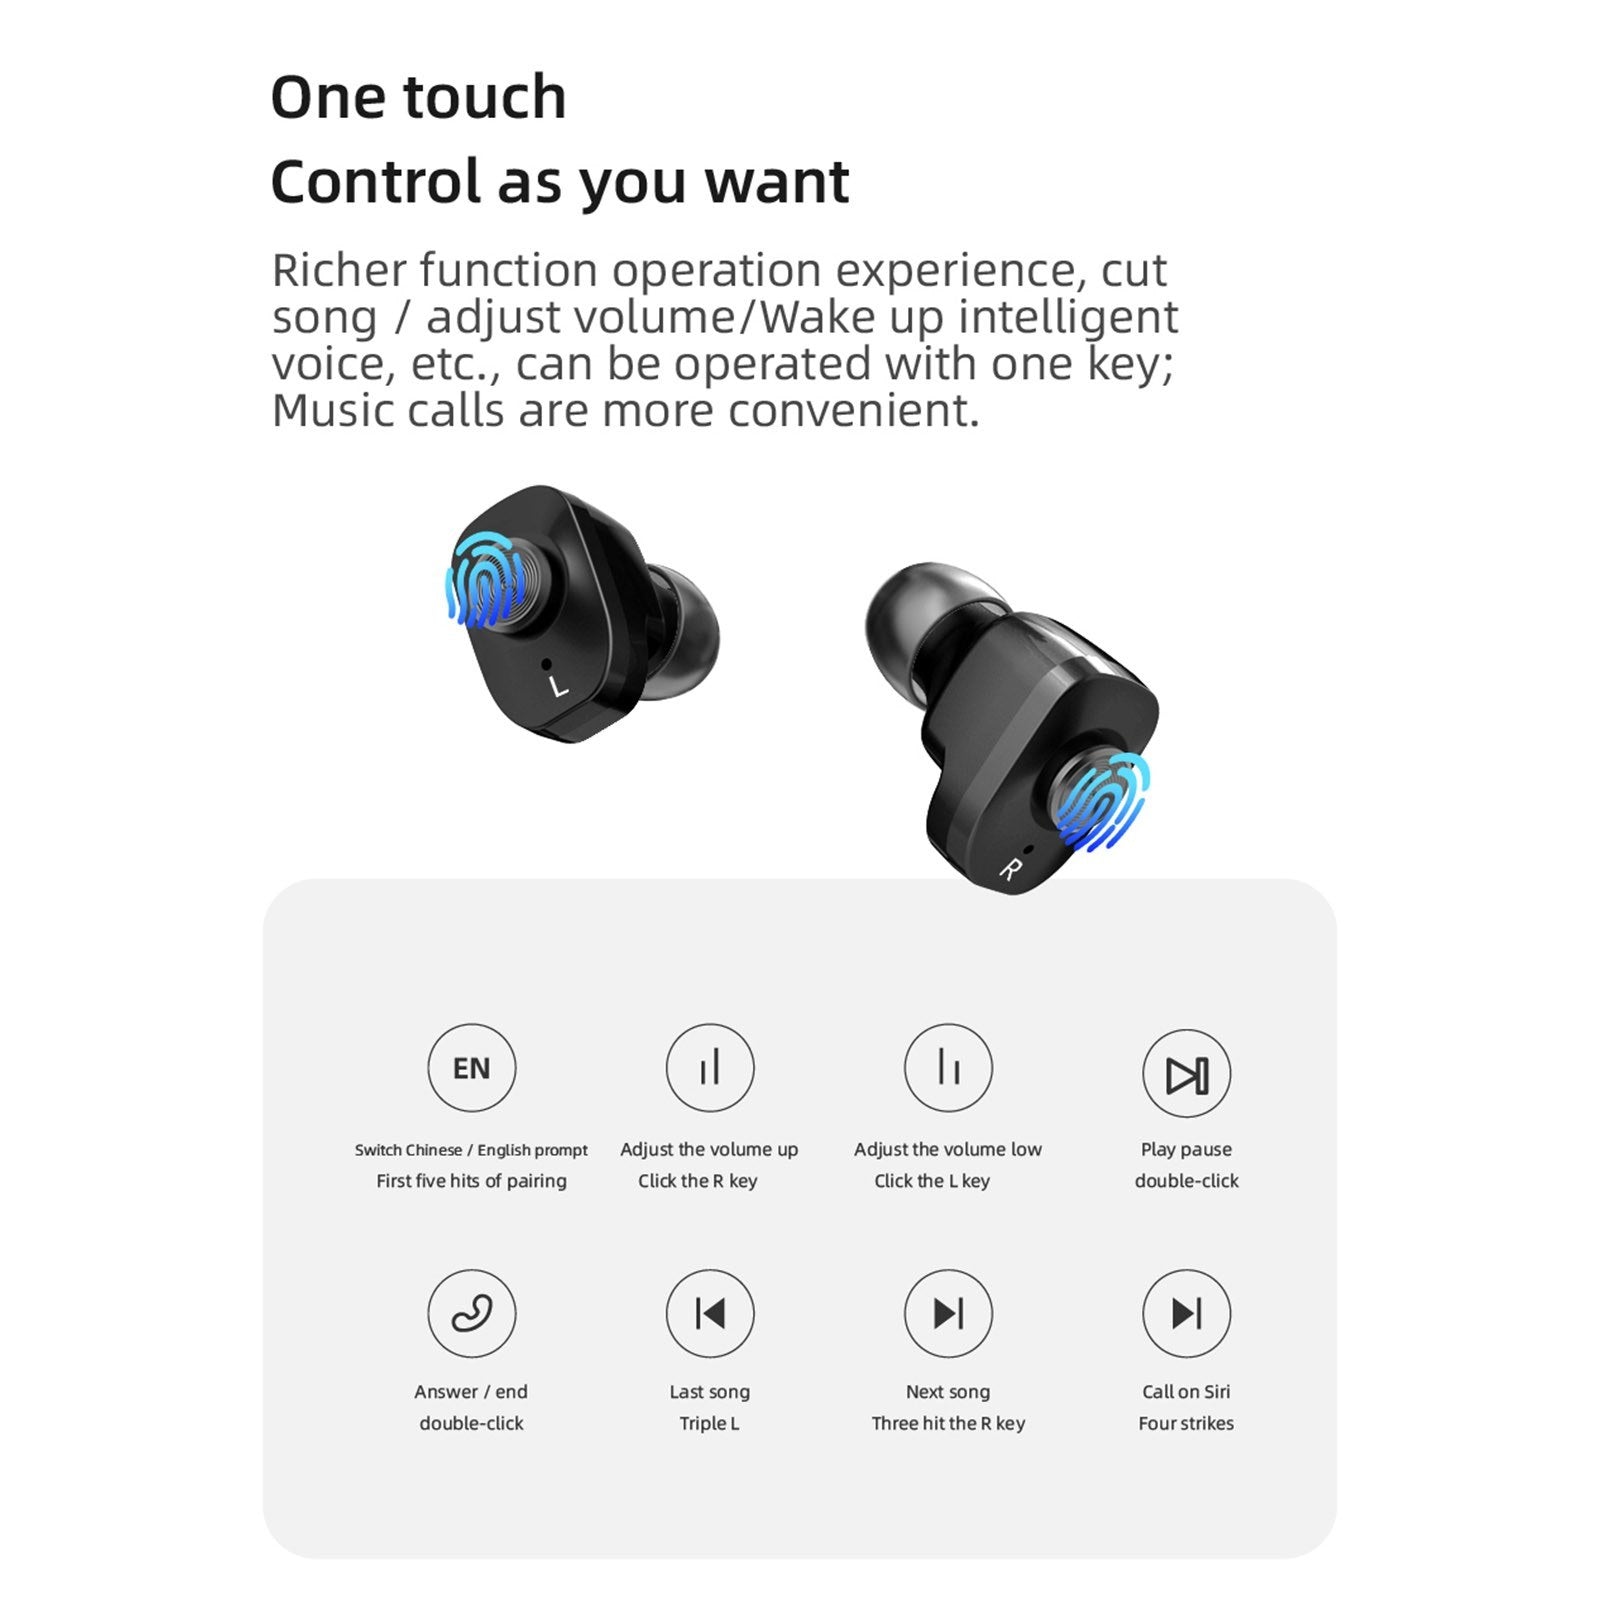 2-In-1 Smart Watch TWS Earbuds Fitness Tracker True Wireless BT5.0 Headphones